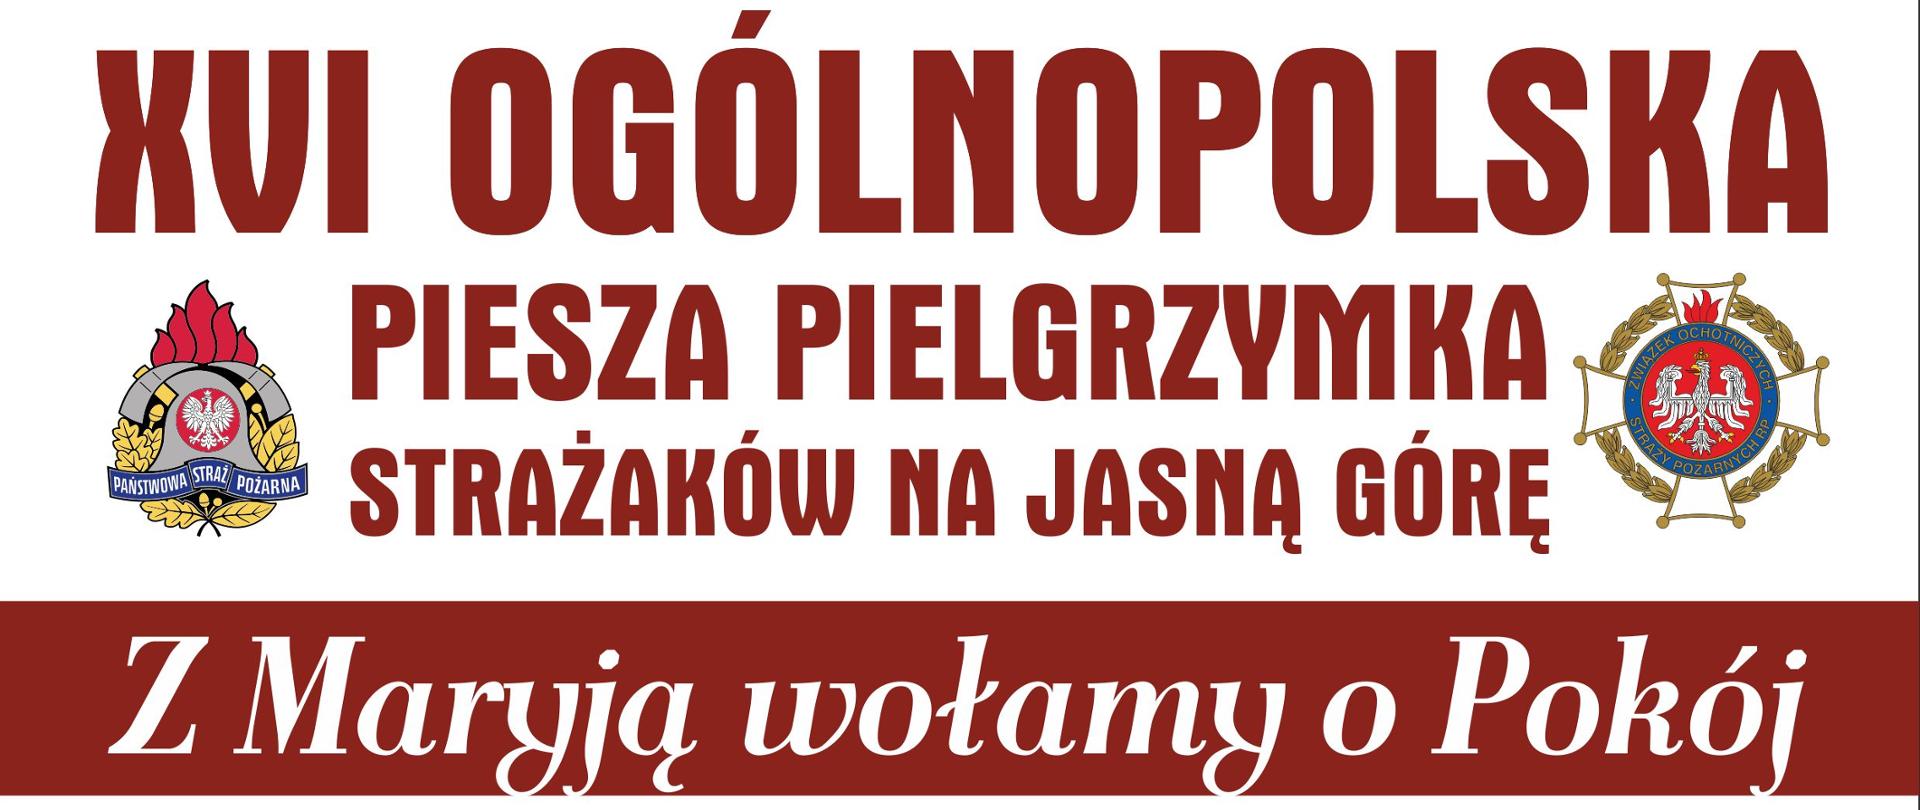 Zdjęcie przedstawia plakat informujący o XVI Ogólnopolskiej Pieszej Pielgrzymce Strażaków na Jasną Górę